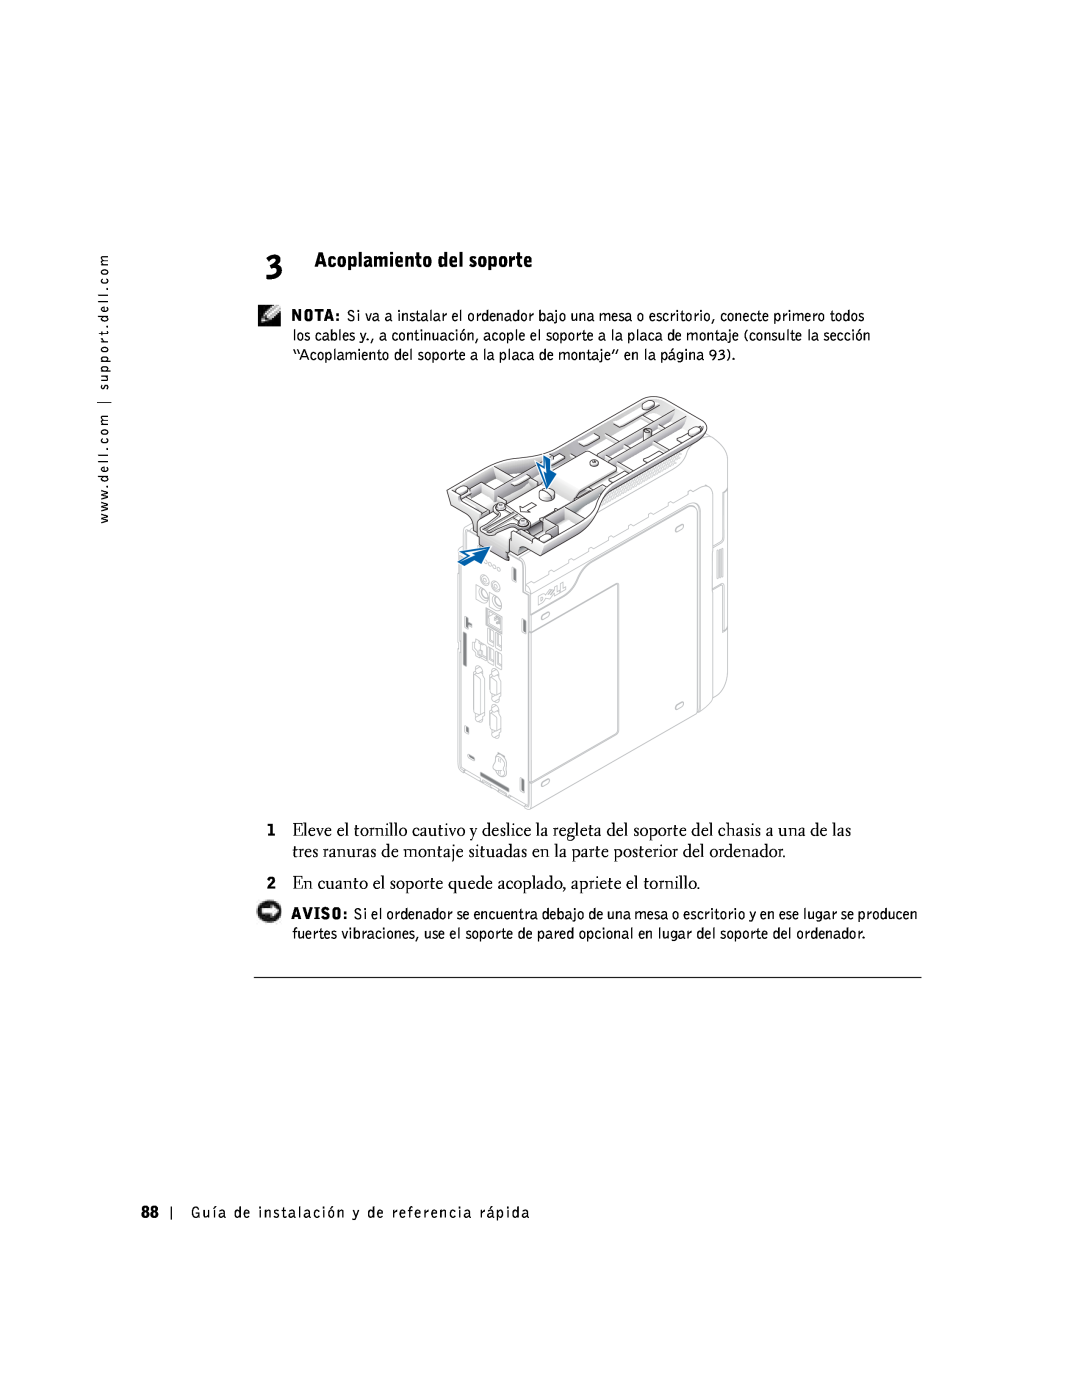 Dell SX manual Acoplamiento del soporte, En cuanto el soporte quede acoplado, apriete el tornillo 